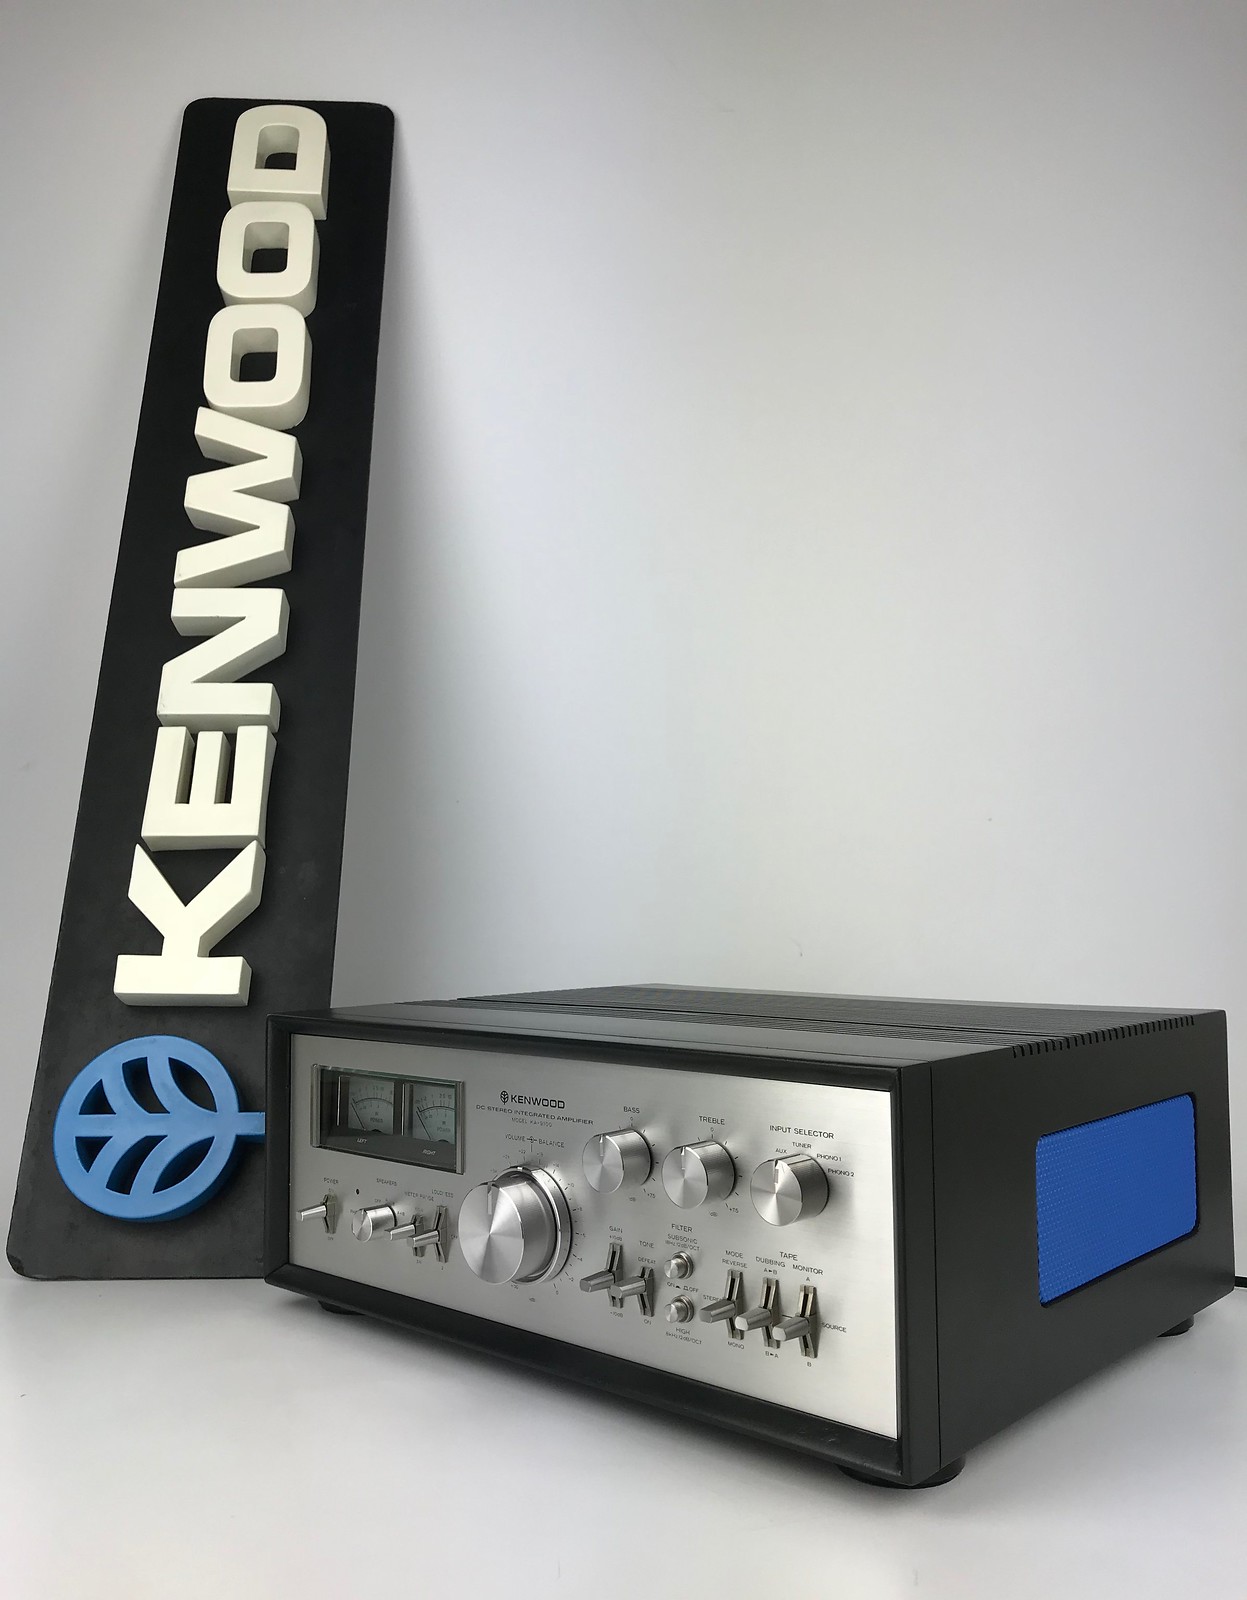 Kenwood KA-9100